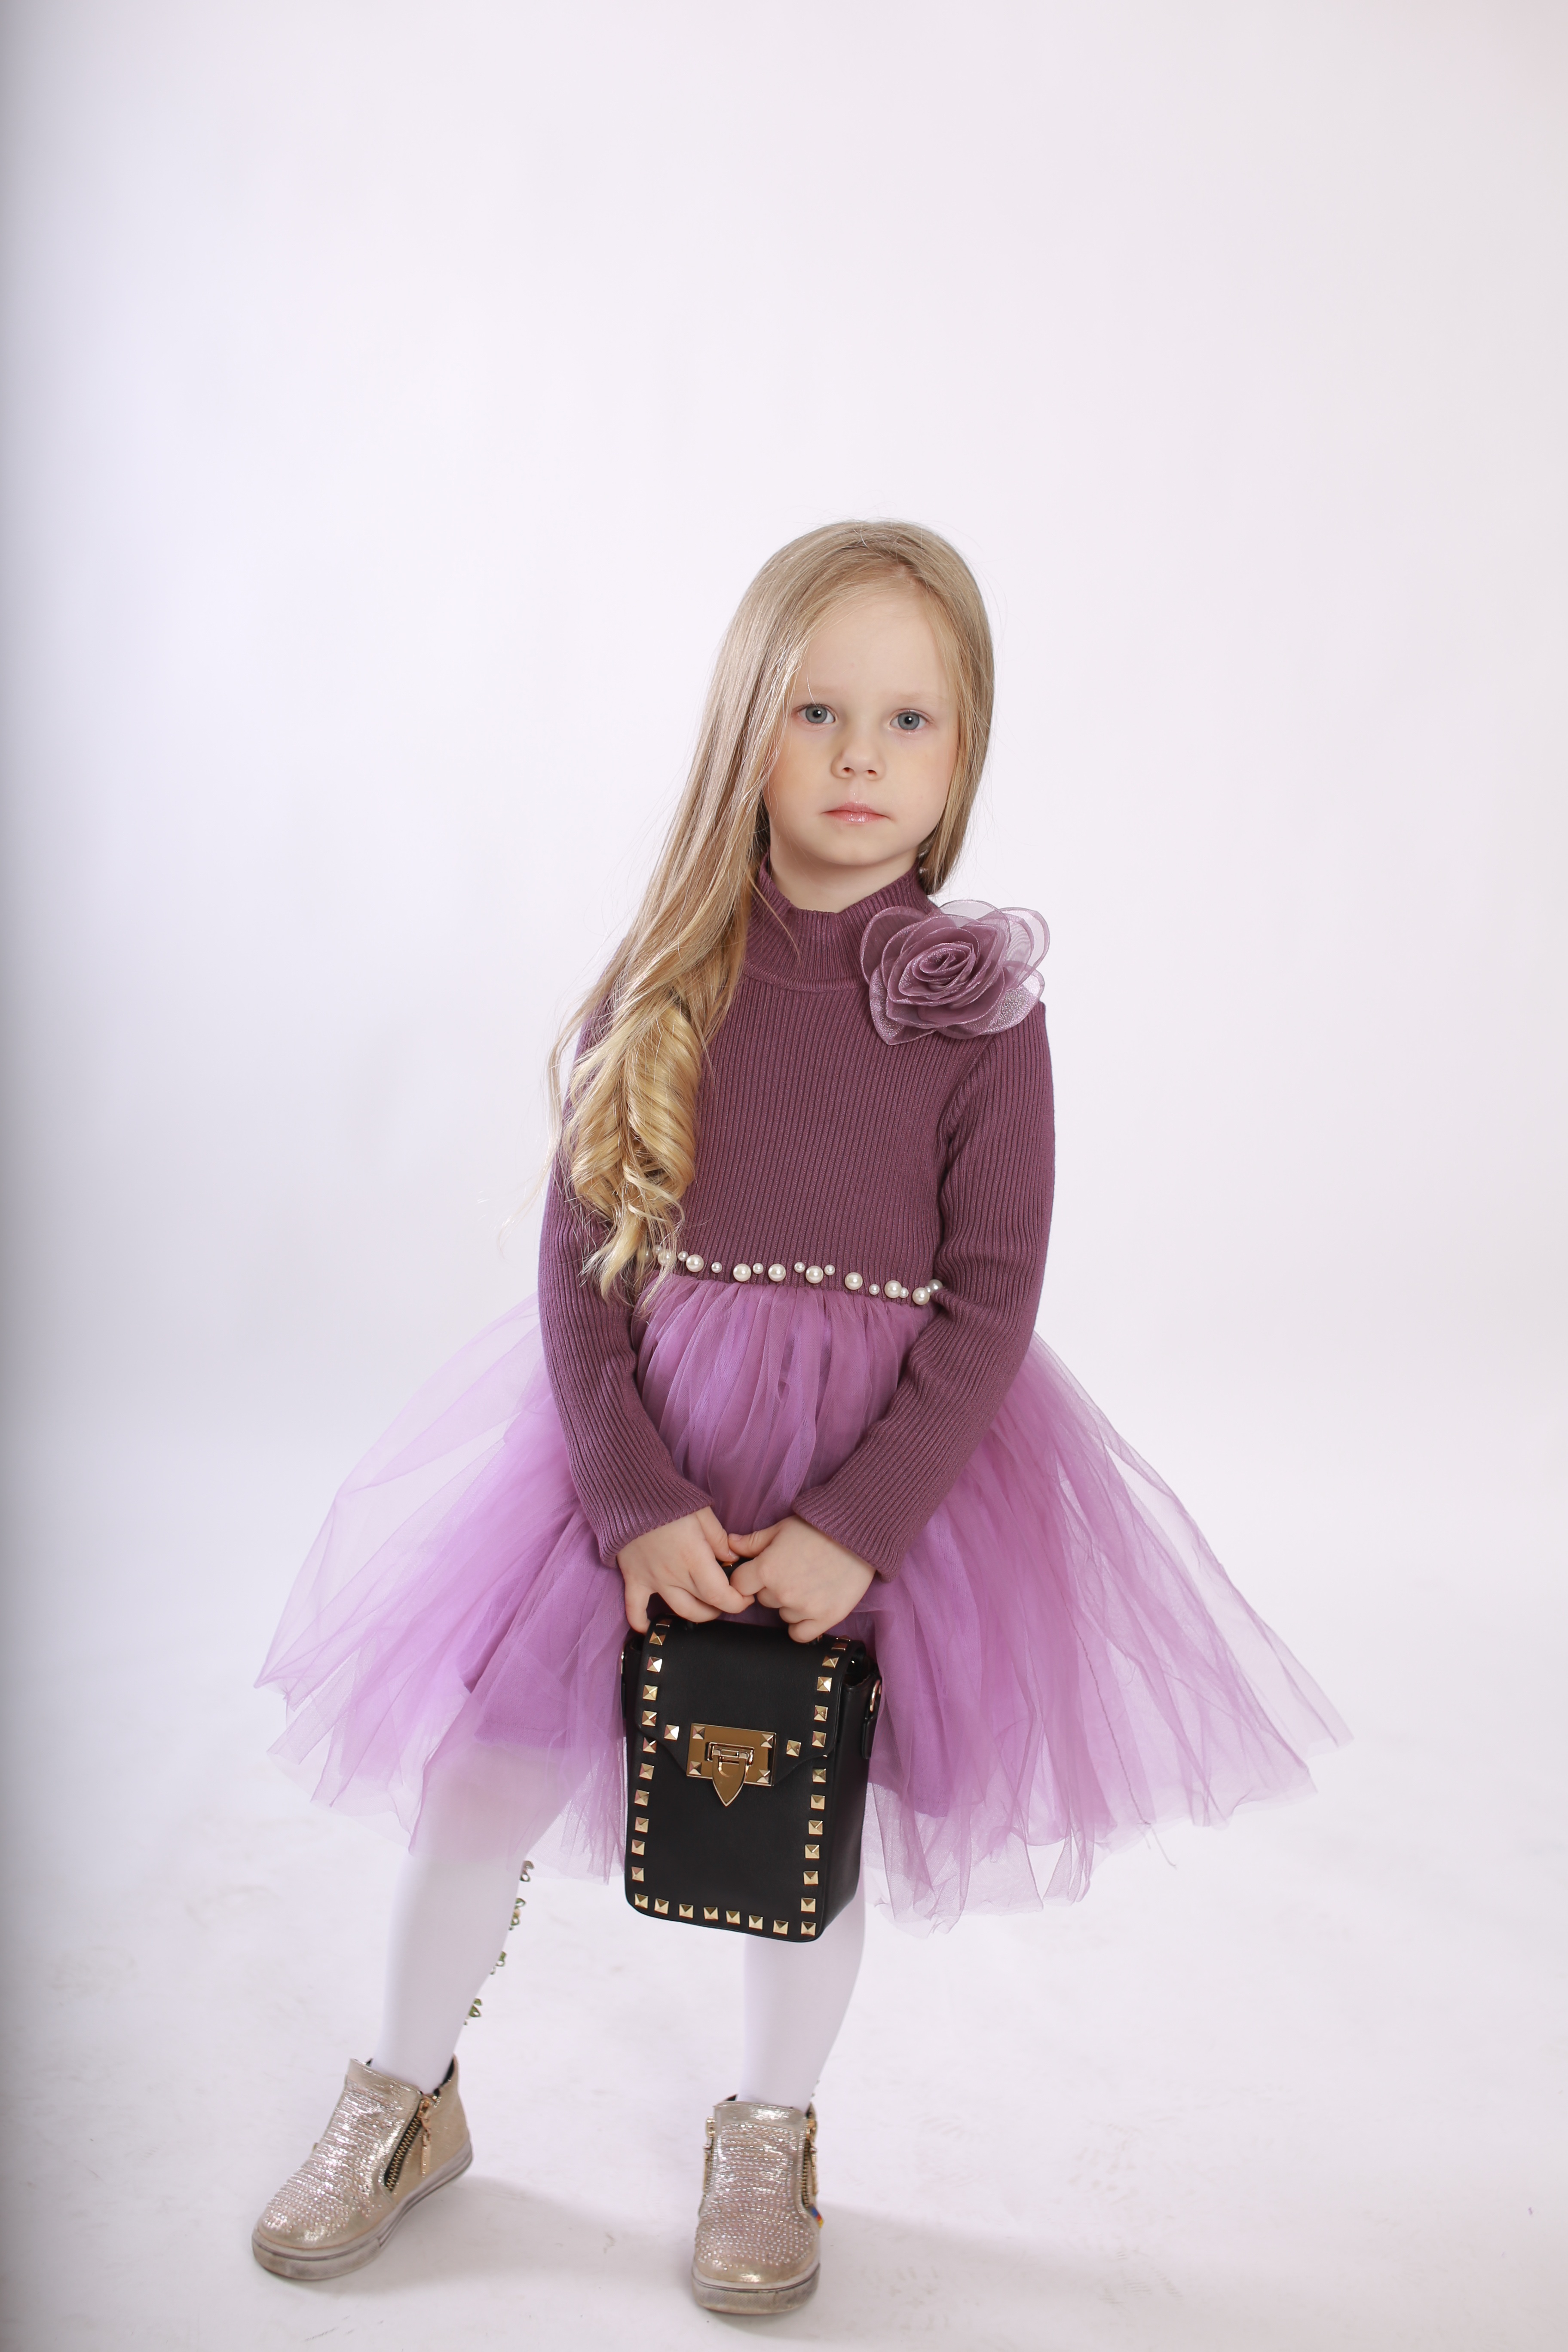 Елизавета Шабанова - аккредитованная модель для участия в подиумных показах на Междунродной Детской Неделе моды